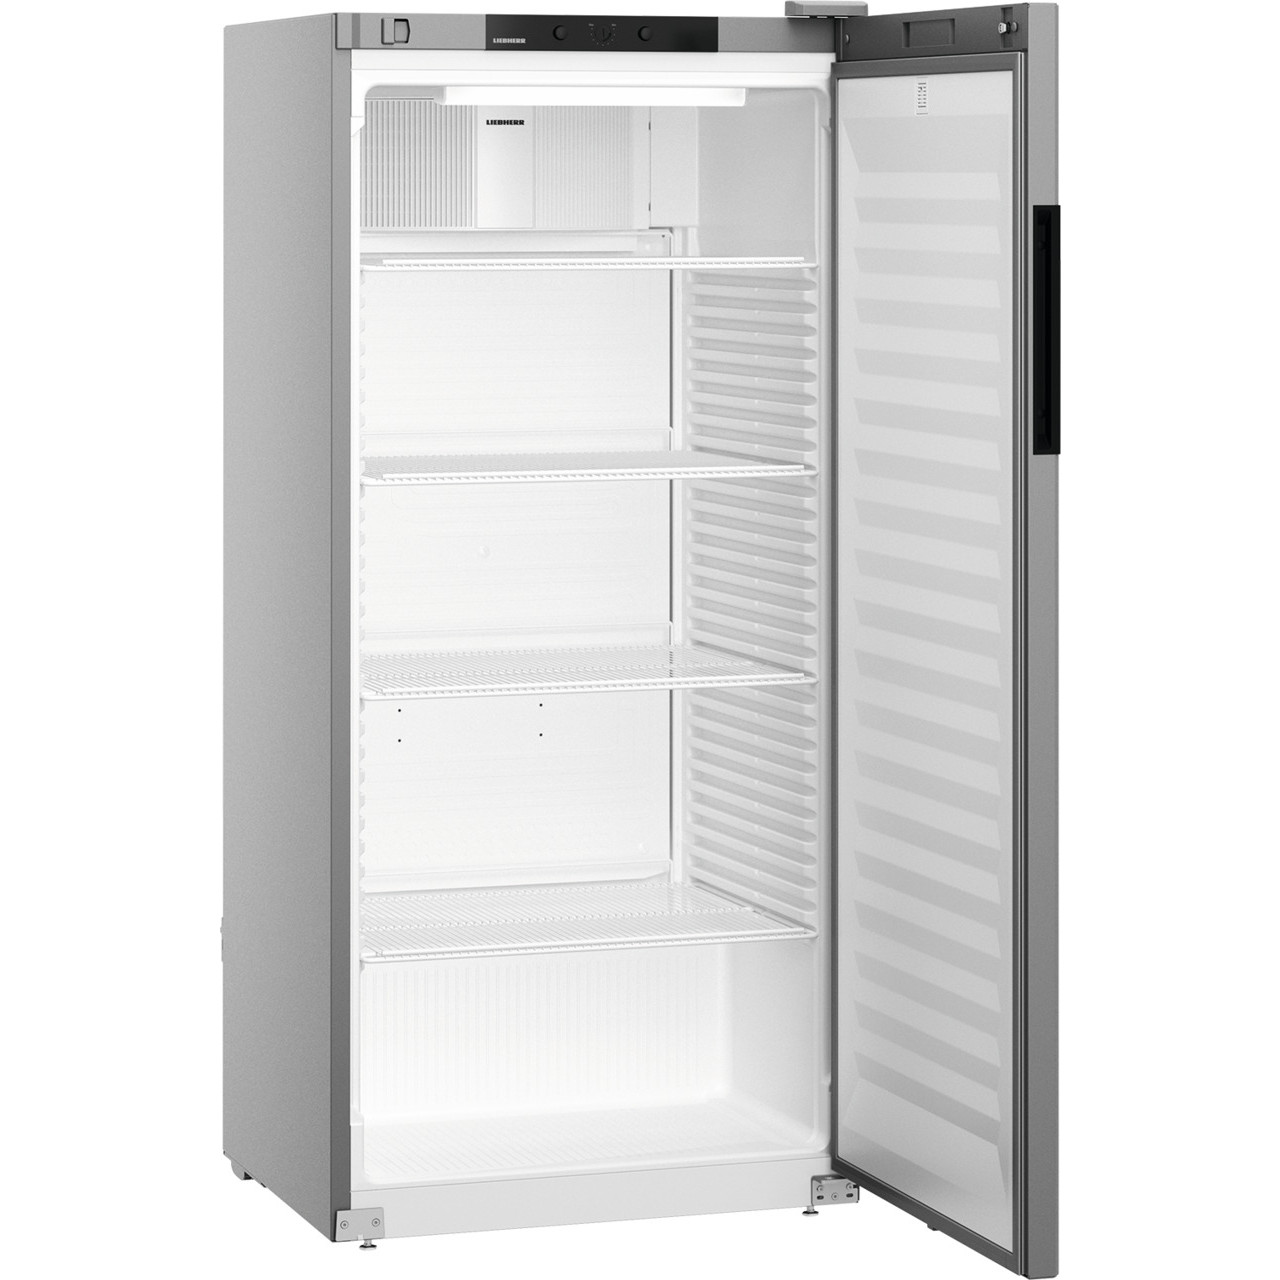 Hygiene-Tiefkühlschrank 700 l mit geprägten Sicken 695 x 870 x